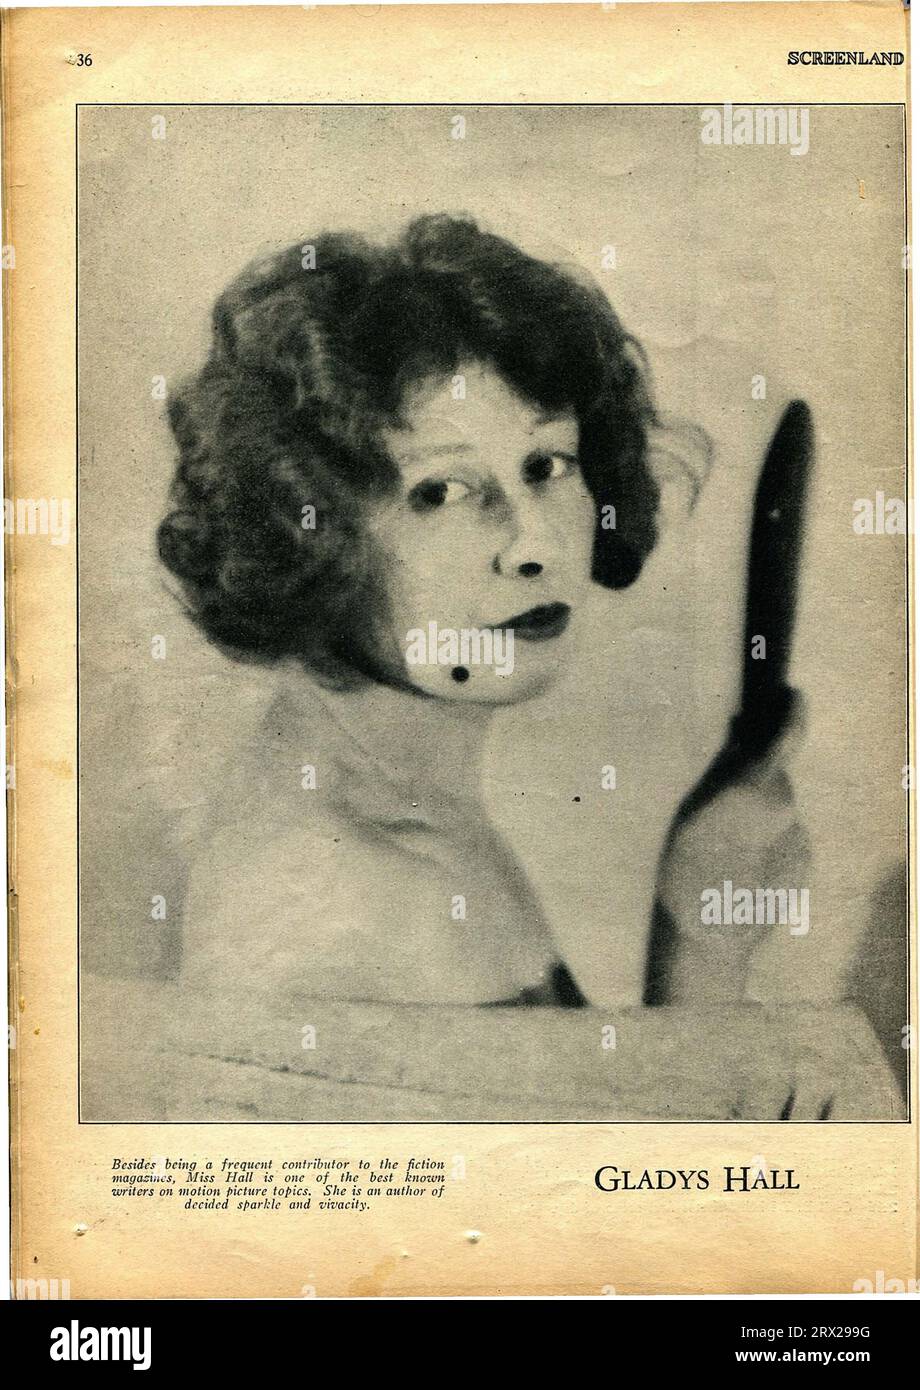 Screenland war ein monatlich erscheinendes US-Magazin über Filme. Gladys Hall war eine US-amerikanische Bühnenkünstlerin und Stummfilmschauspielerin Stockfoto